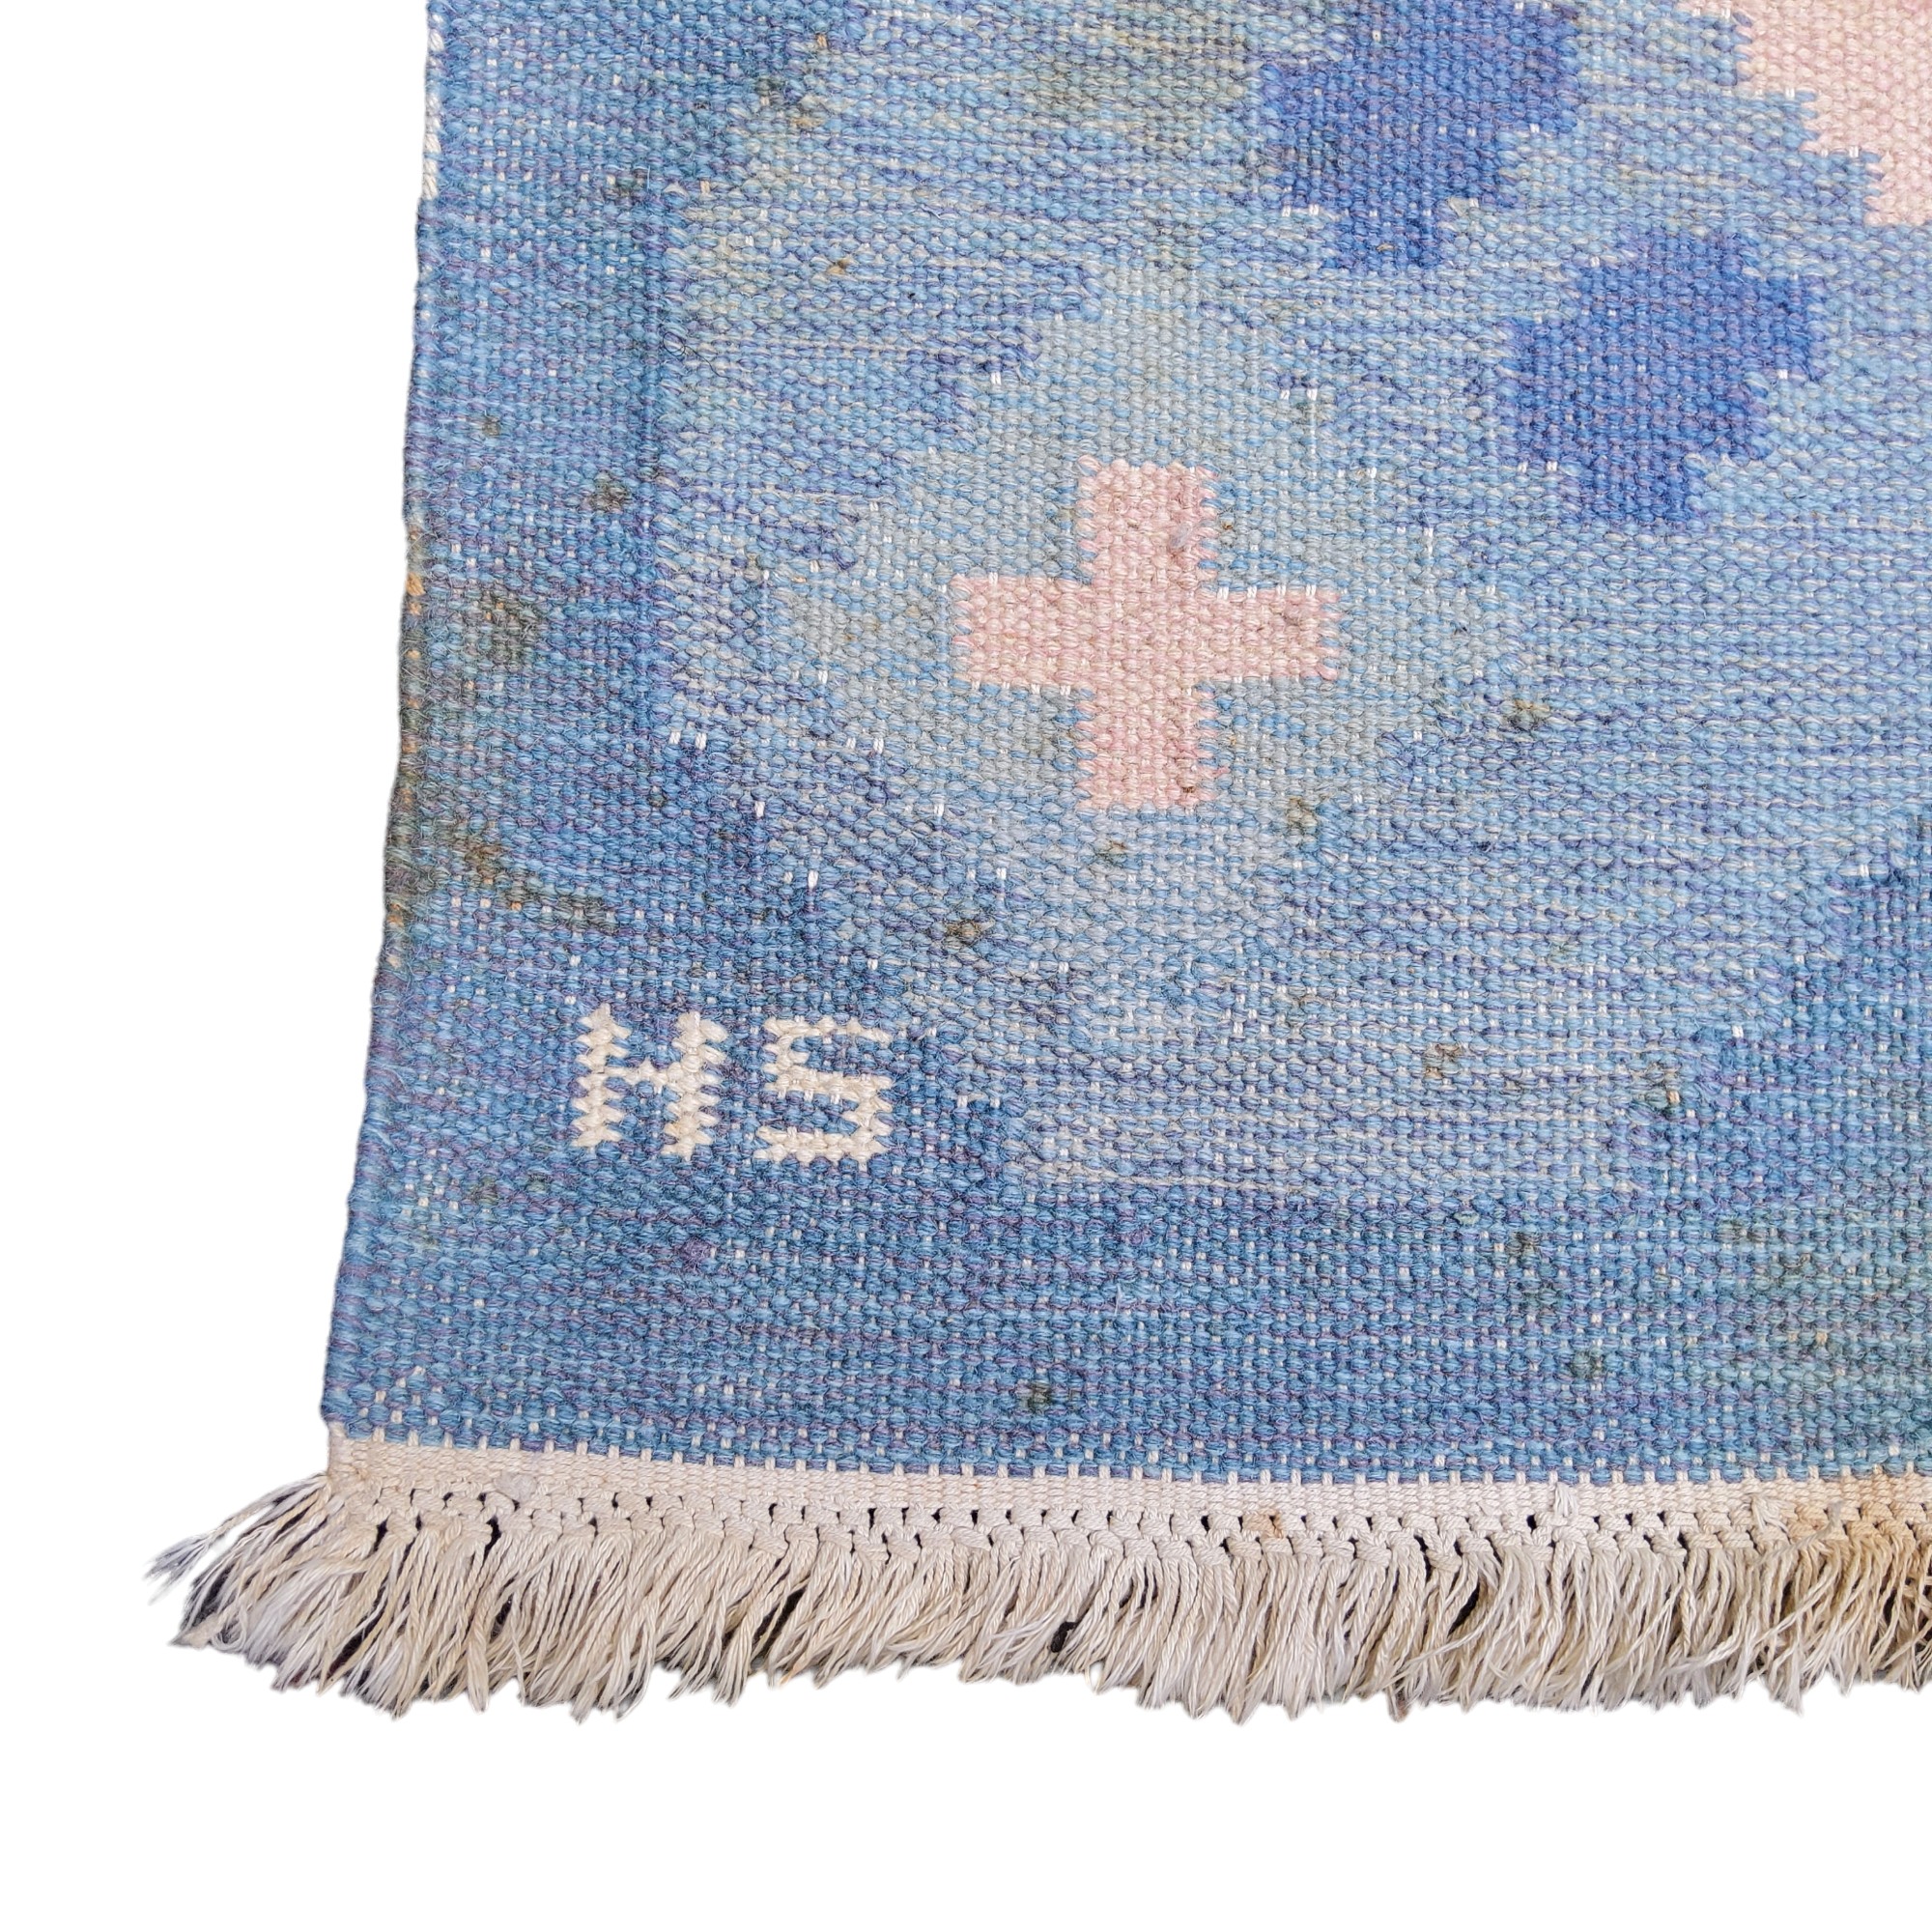 A Swedish flat weave carpet, signed by Svensk Hemslöjd “SH” in pastel tones, 138cm wide x 200cm - Image 2 of 3